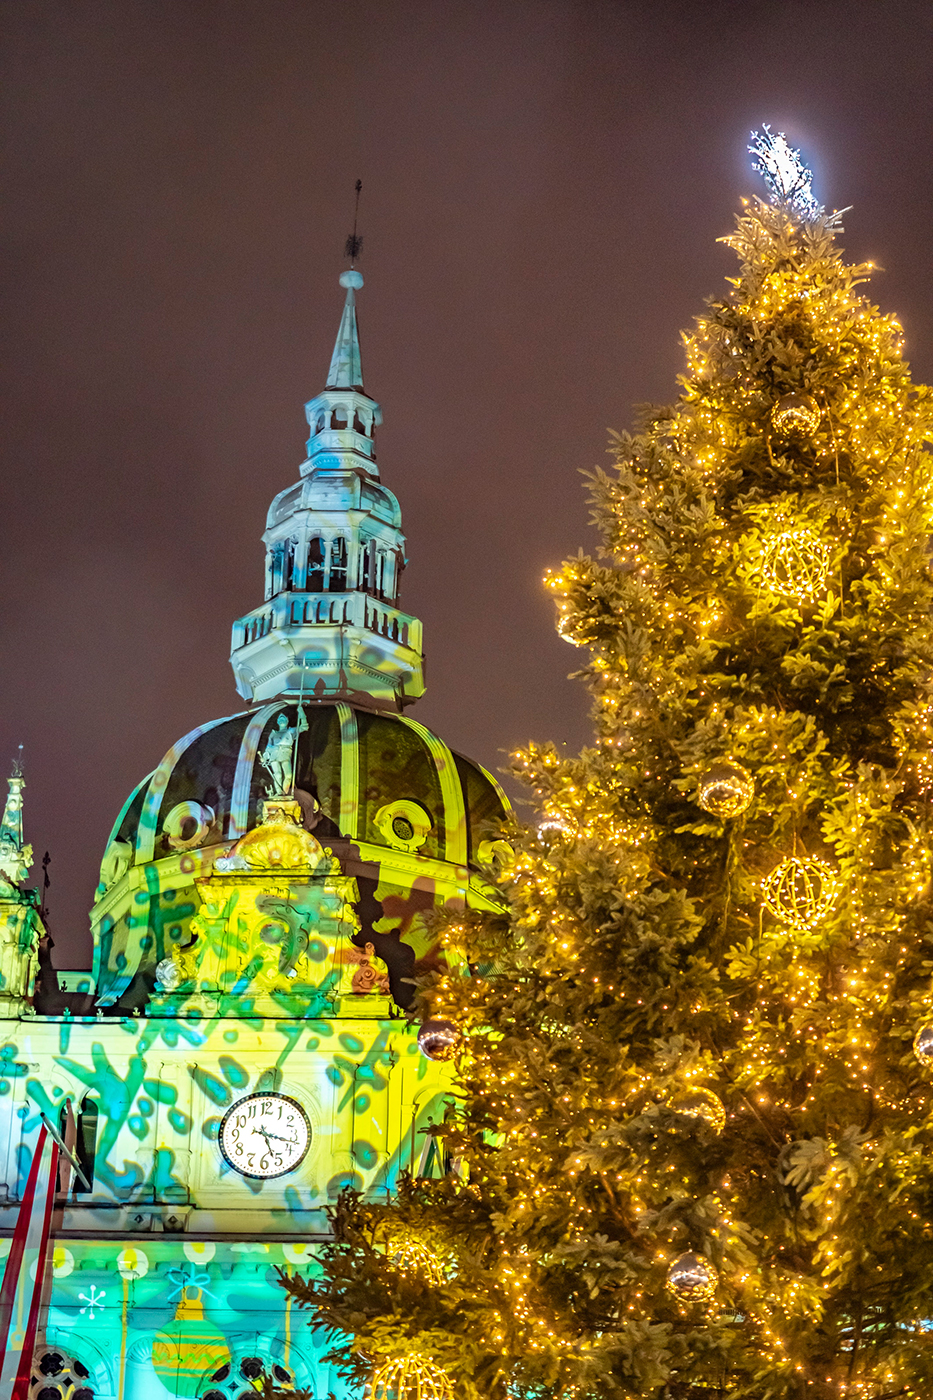 Der illuminierte Christbaum vor der weihnachtlichen Rathaus-Projektion.